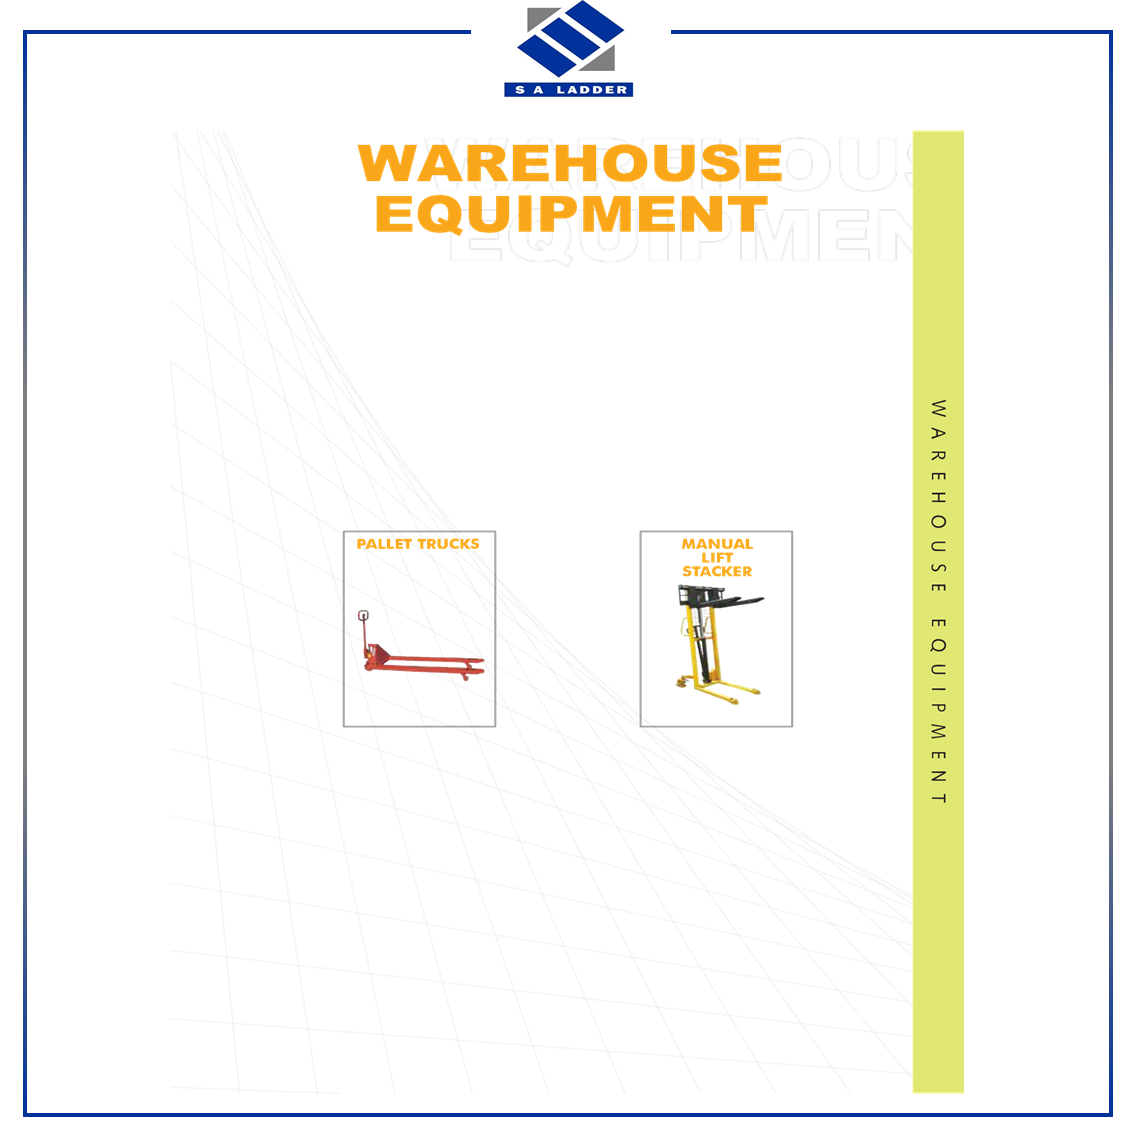 SA LADDER - Warehouse Equipment Catalogue